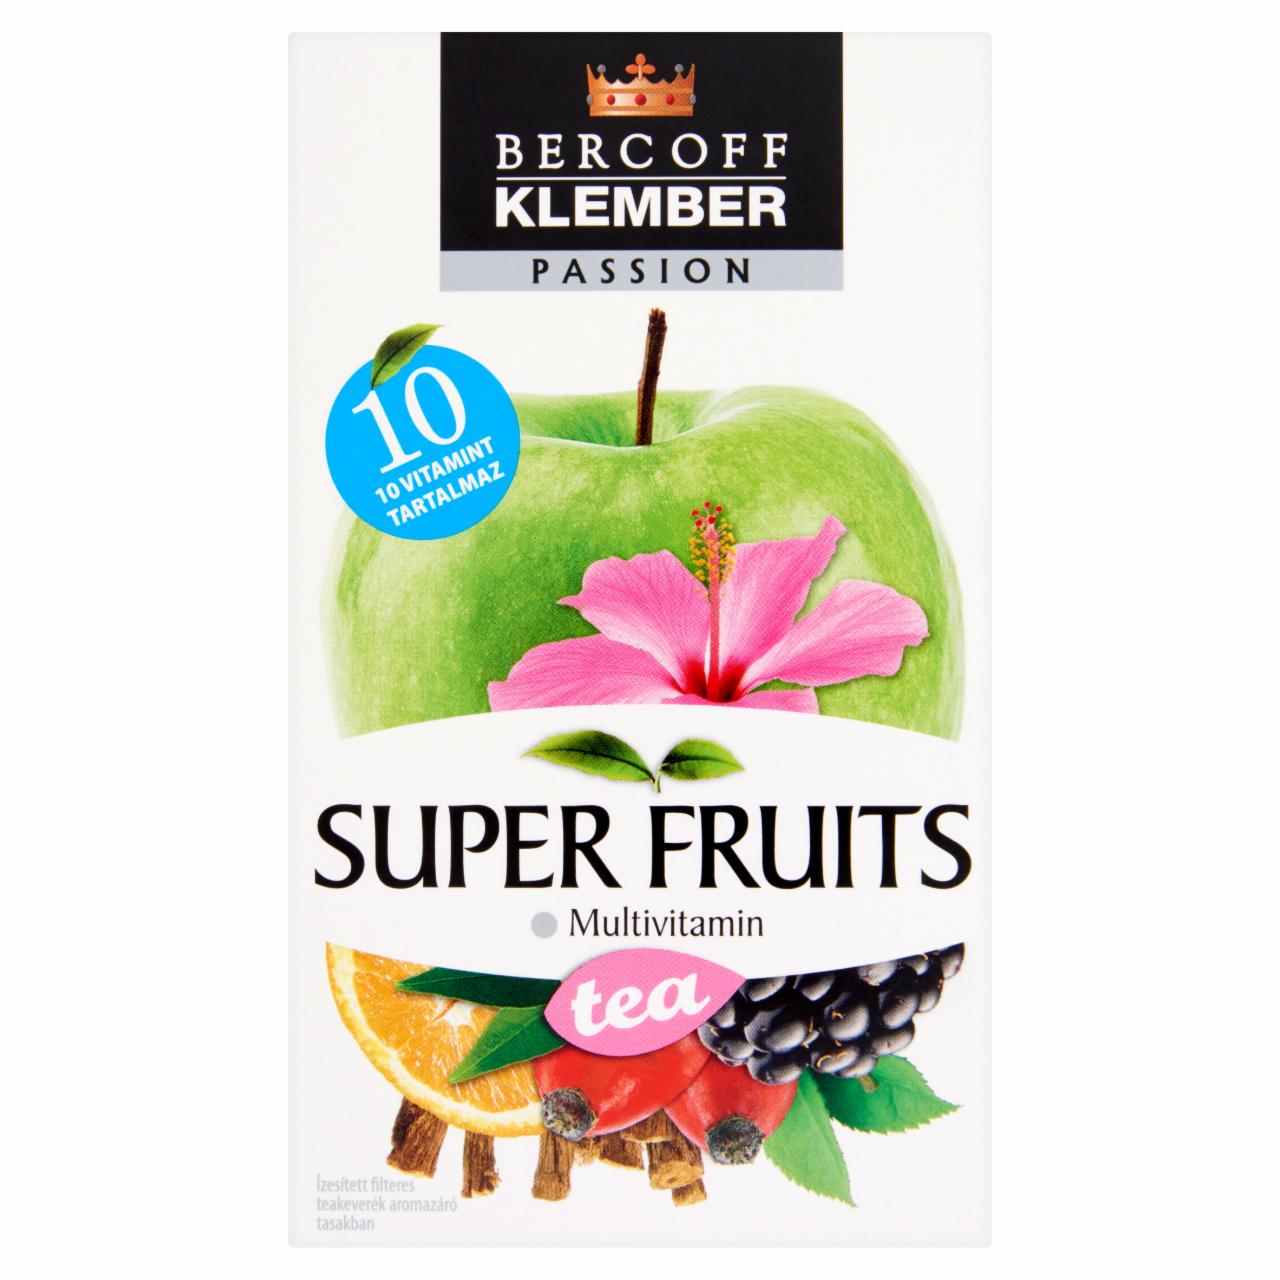 Képek - Bercoff Klember Passion Super Fruits narancs ízű gyümölcstea vitaminokkal 20 filter 50 g